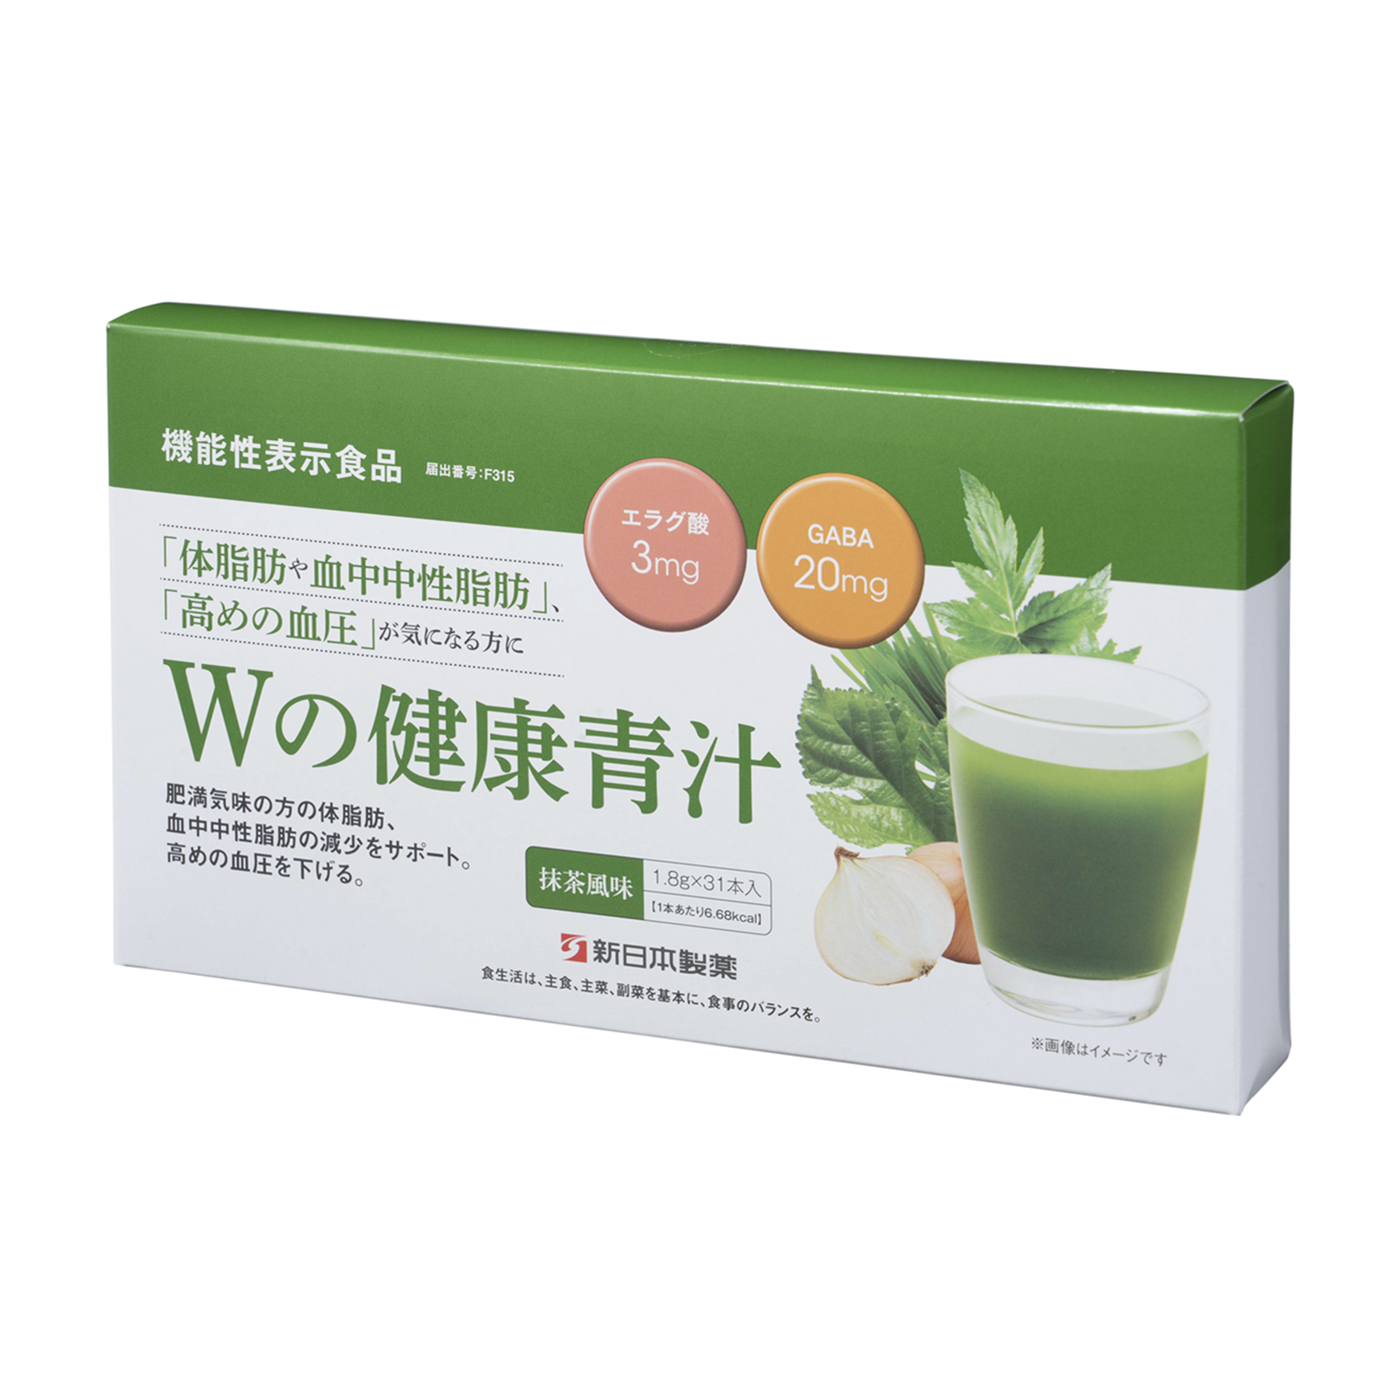 Wの健康青汁 新日本製薬 エラグ酸 青汁 国産 粉末 1.8g×31本(1ヵ月分